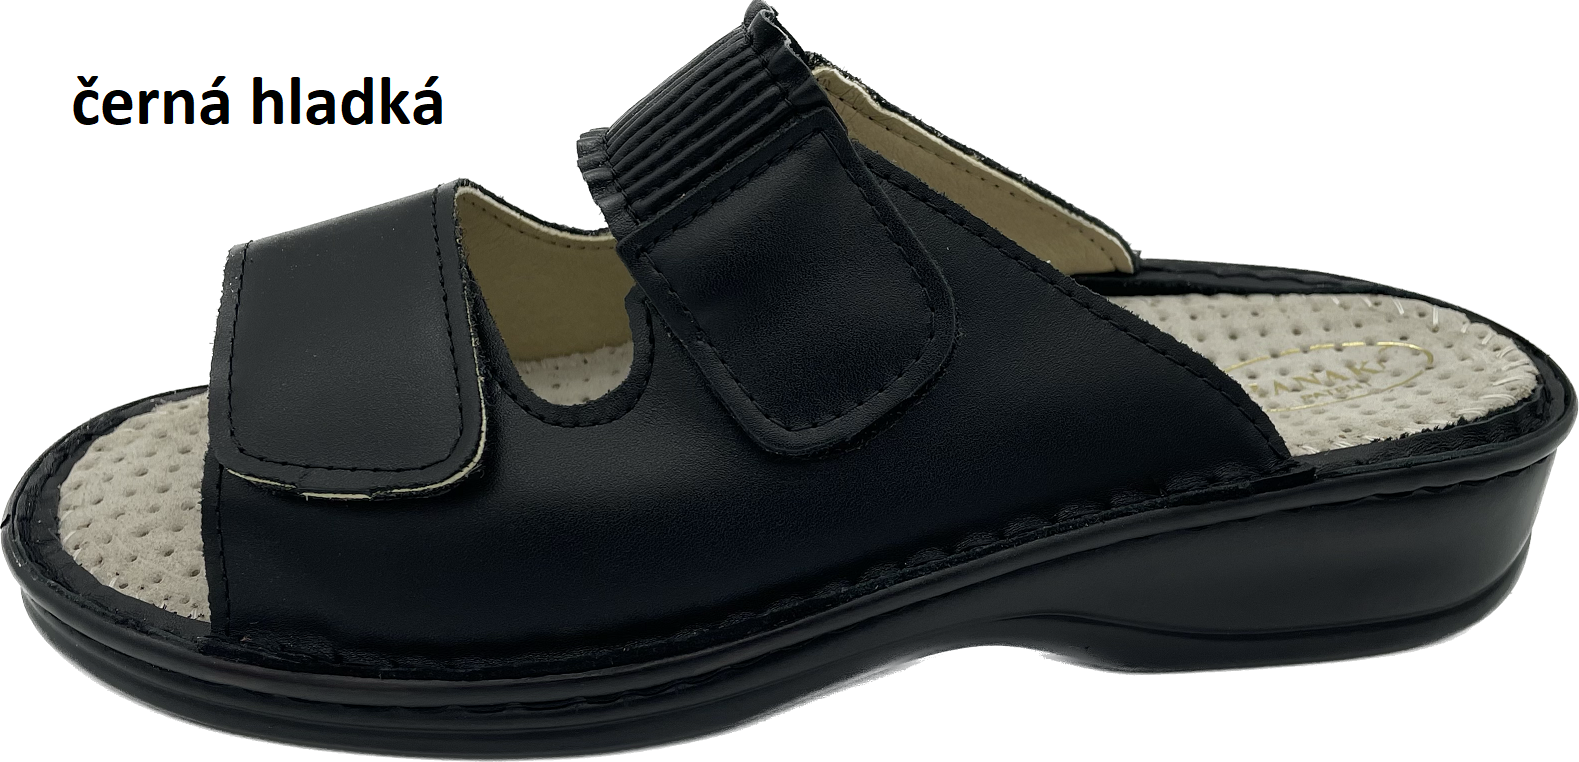 Boty Hanák vzor 304 - černá podešev Barva usně: černá hladká, Velikosti obuvi: 36